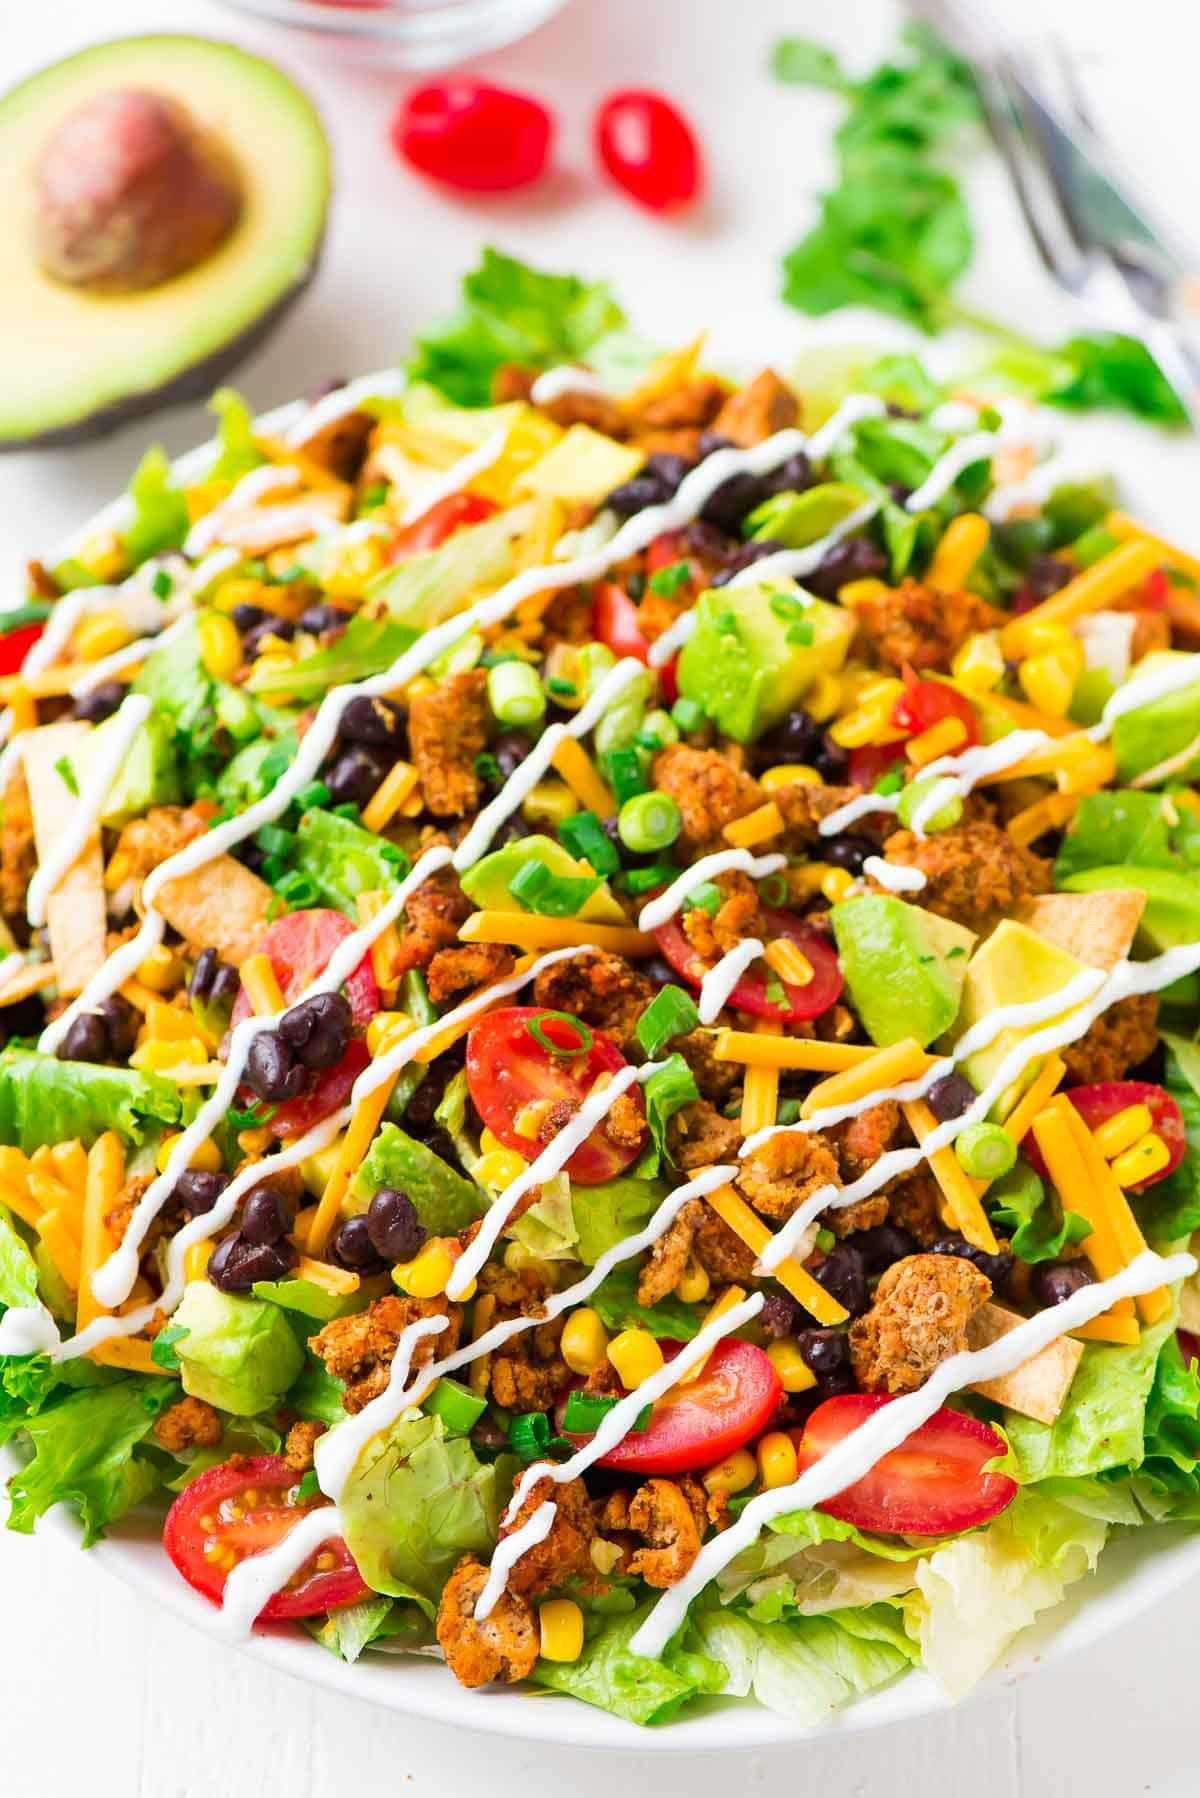 Healthy Taco Salad With Ground Turkey
 Skinny Taco Salad with Ground Turkey and Avocado